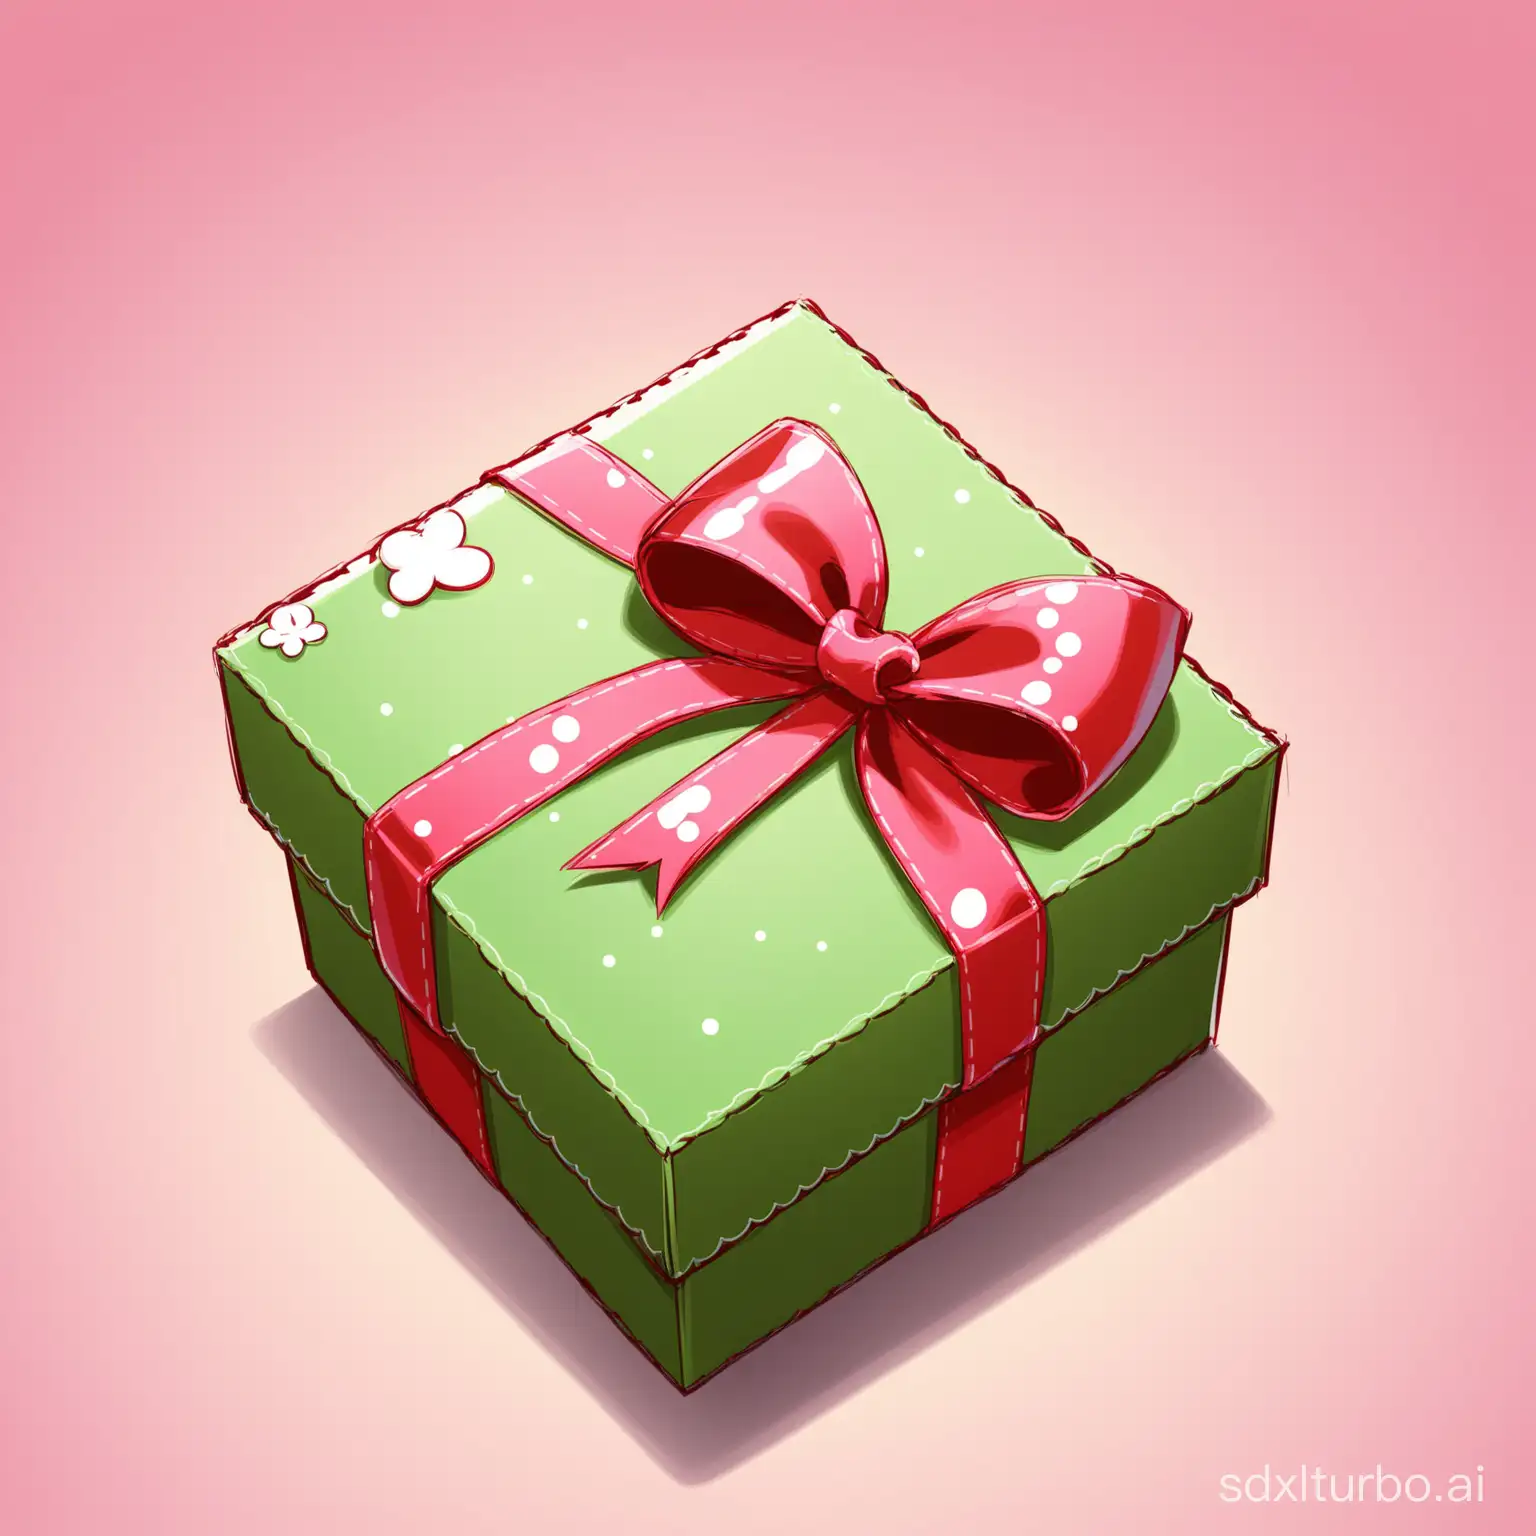 Cartoon small gift box